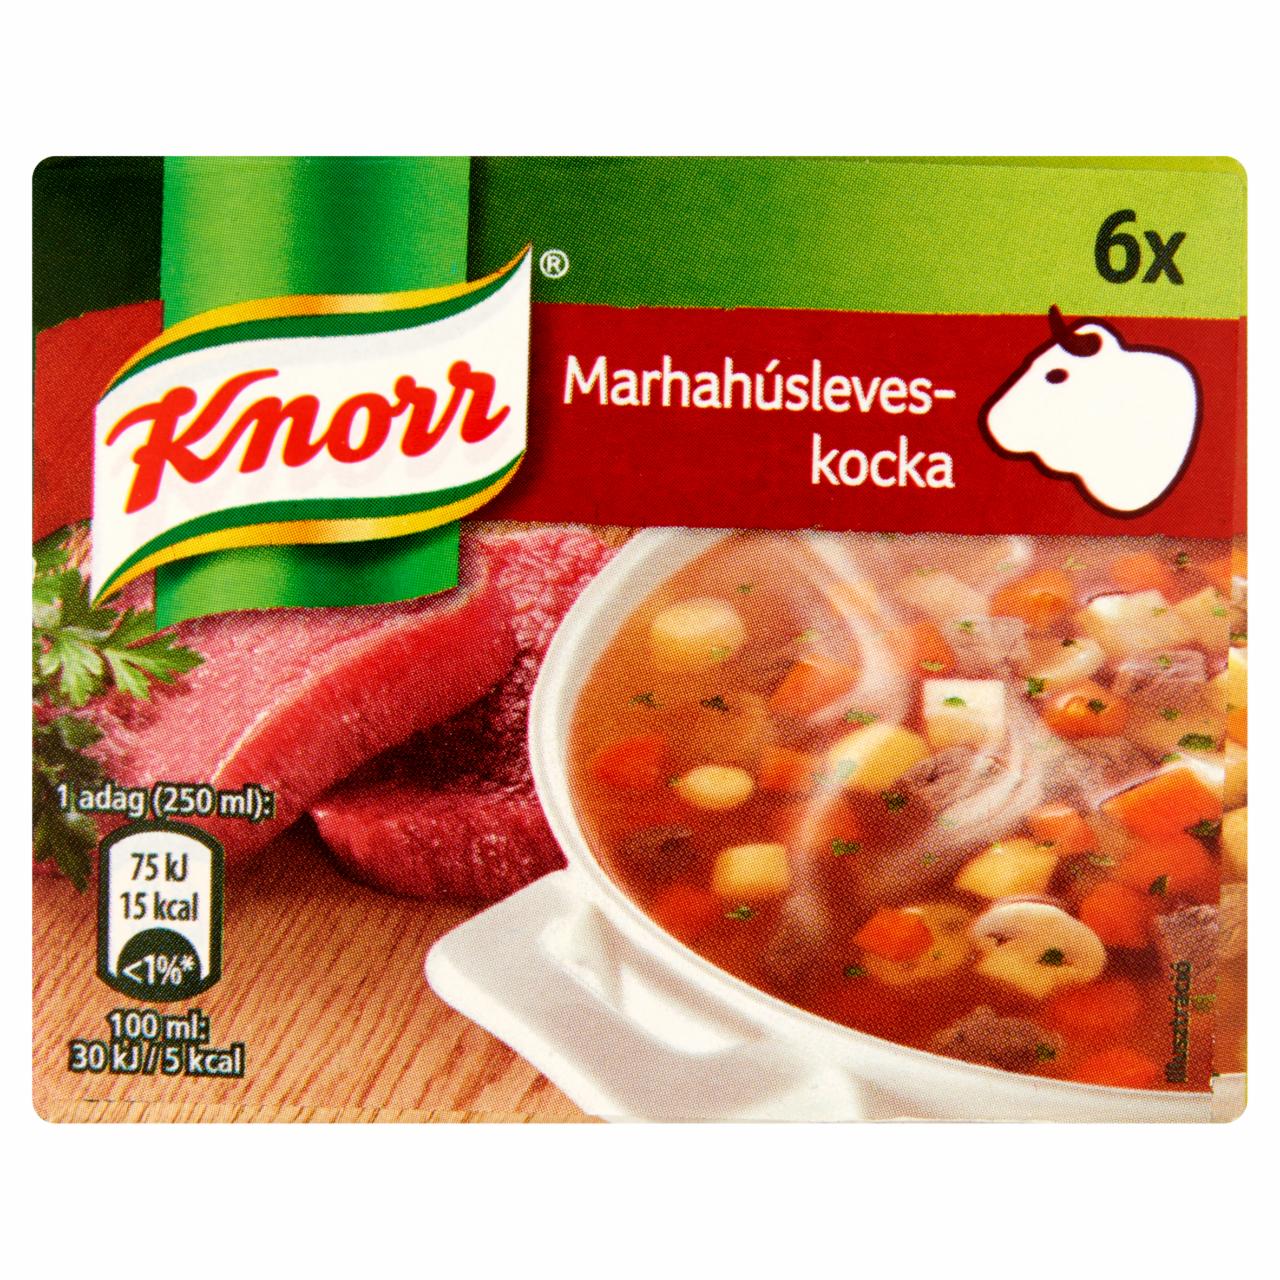 Képek - Knorr marhahúsleves-kocka 6 db 60 g